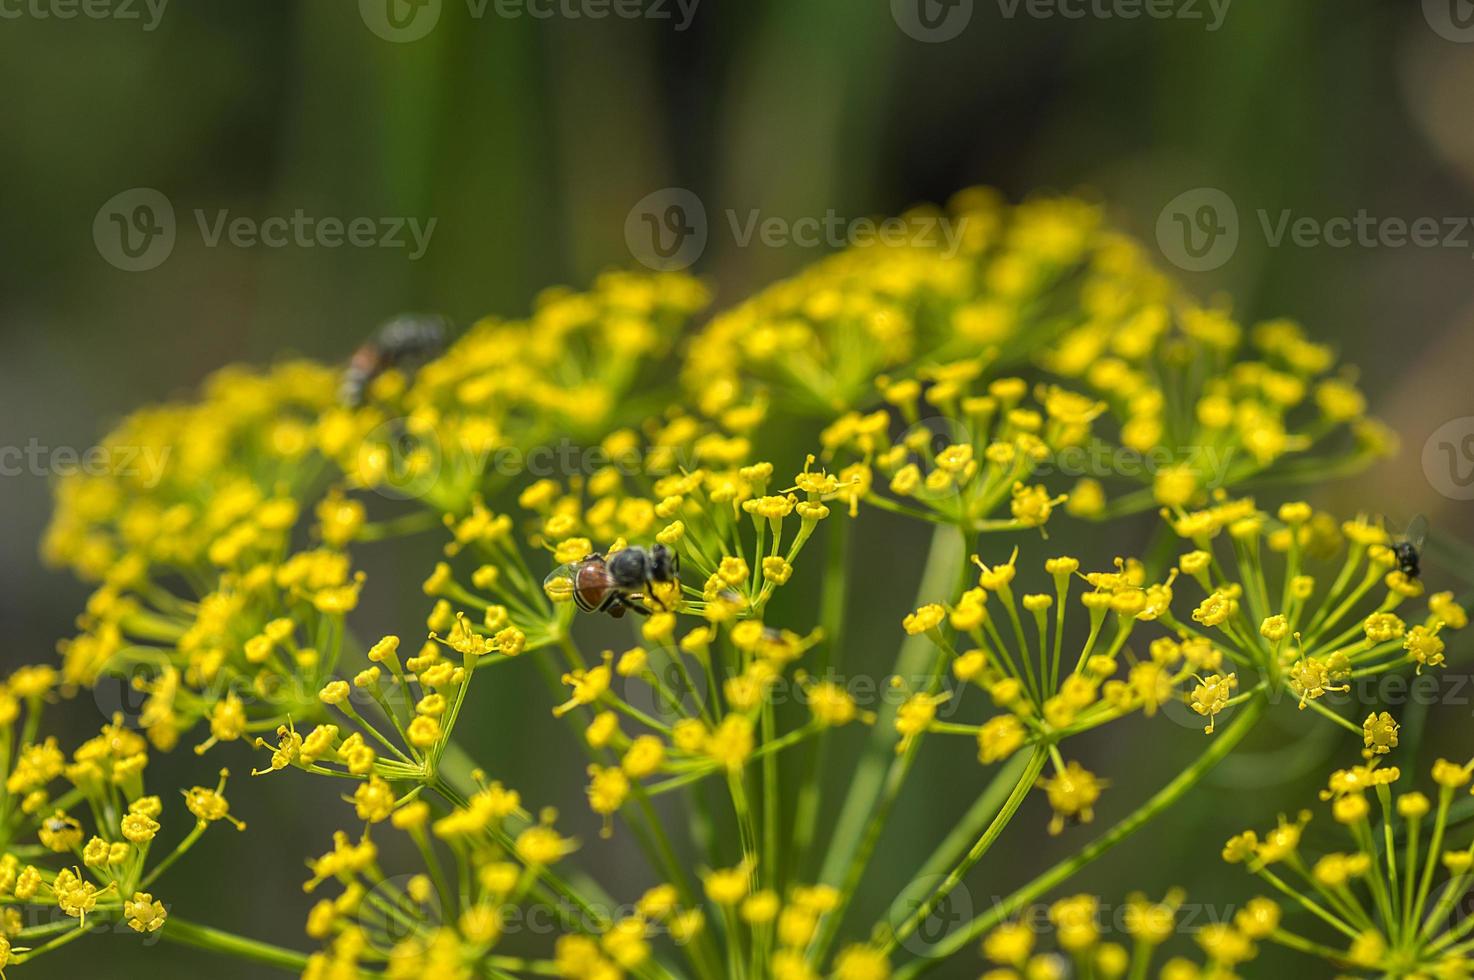 blomma av grön dill anethum graveolens växer i jordbruksfält. foto